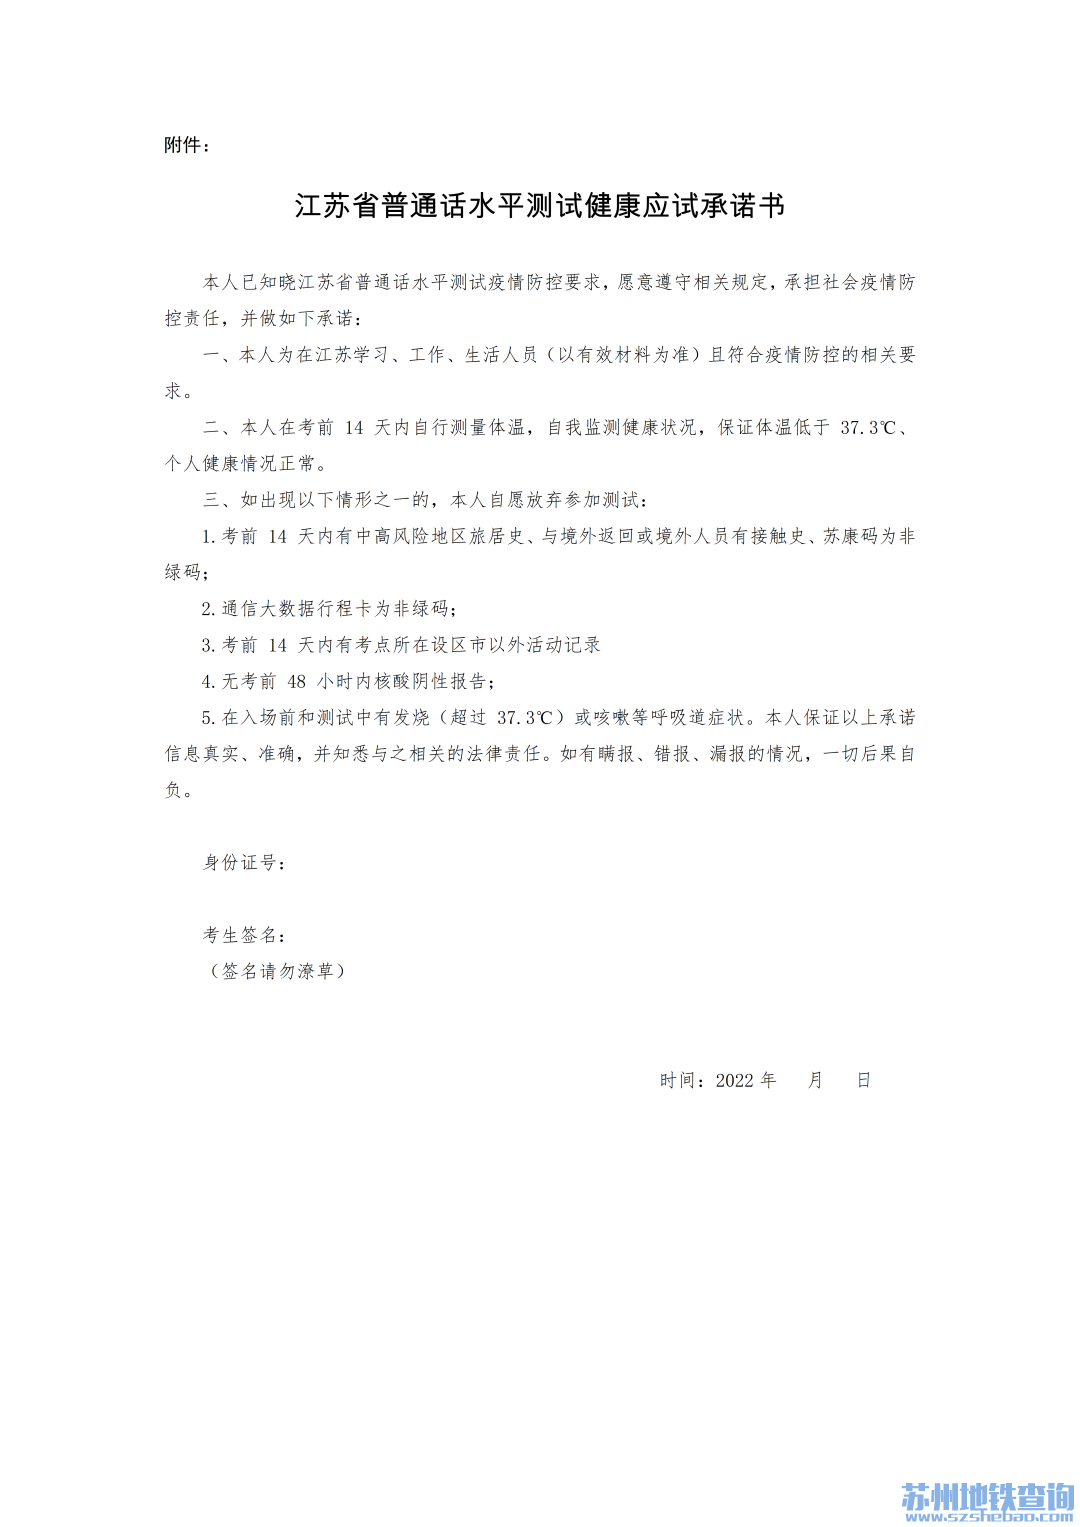 江苏省普通话水平测试健康应试承诺书样式（附下载入口）